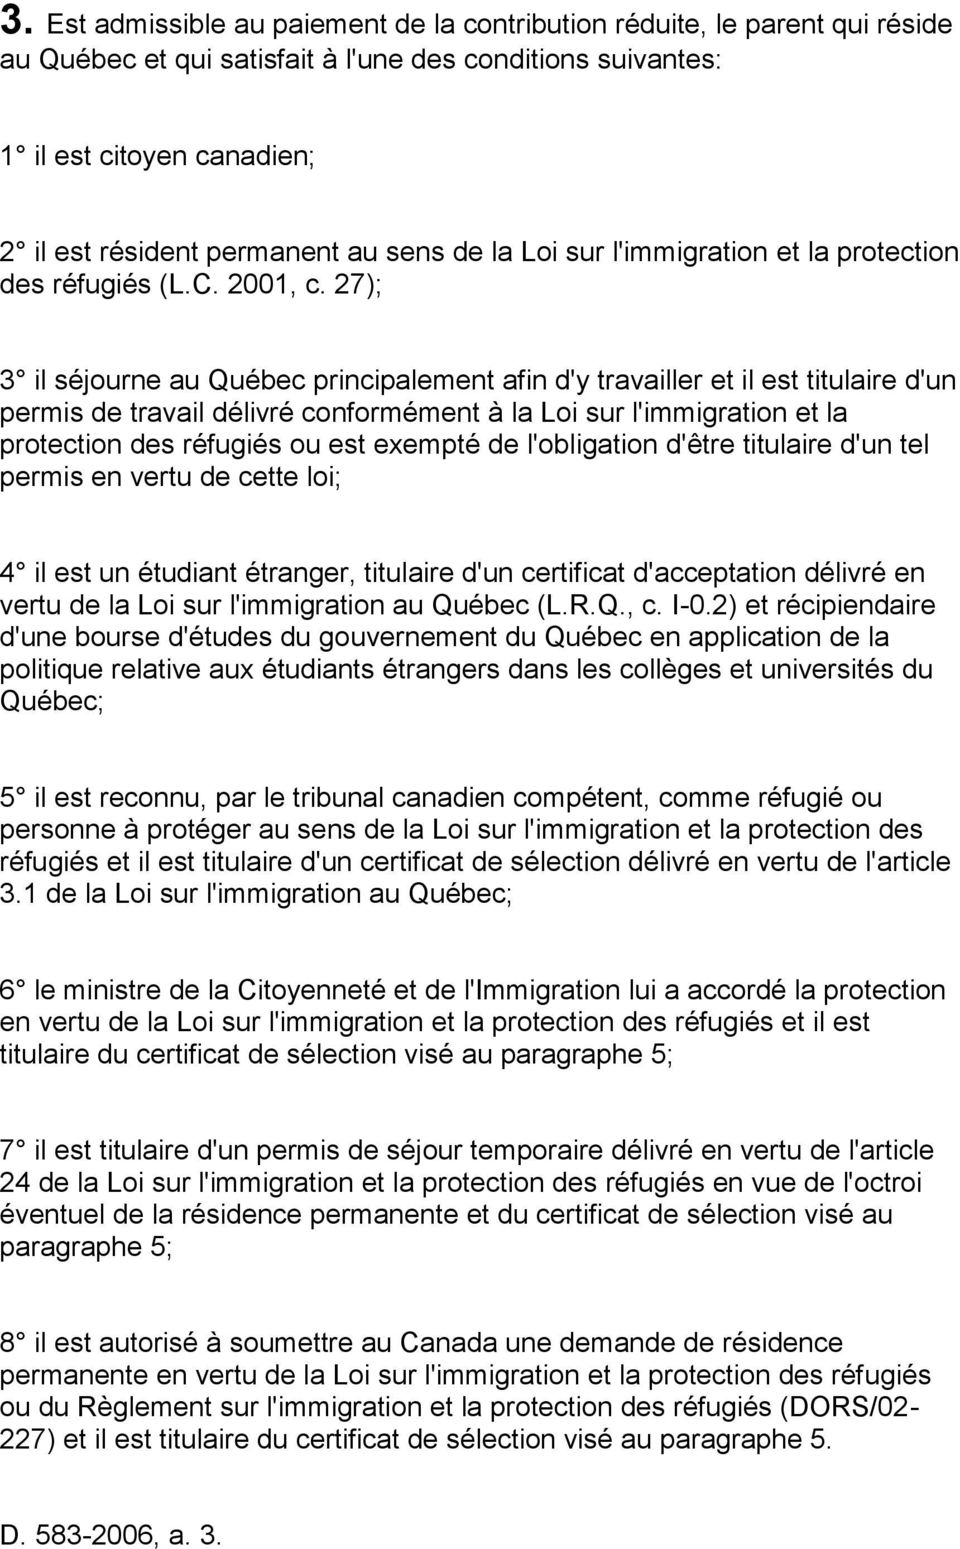 27); 3 il séjourne au Québec principalement afin d'y travailler et il est titulaire d'un permis de travail délivré conformément à la Loi sur l'immigration et la protection des réfugiés ou est exempté